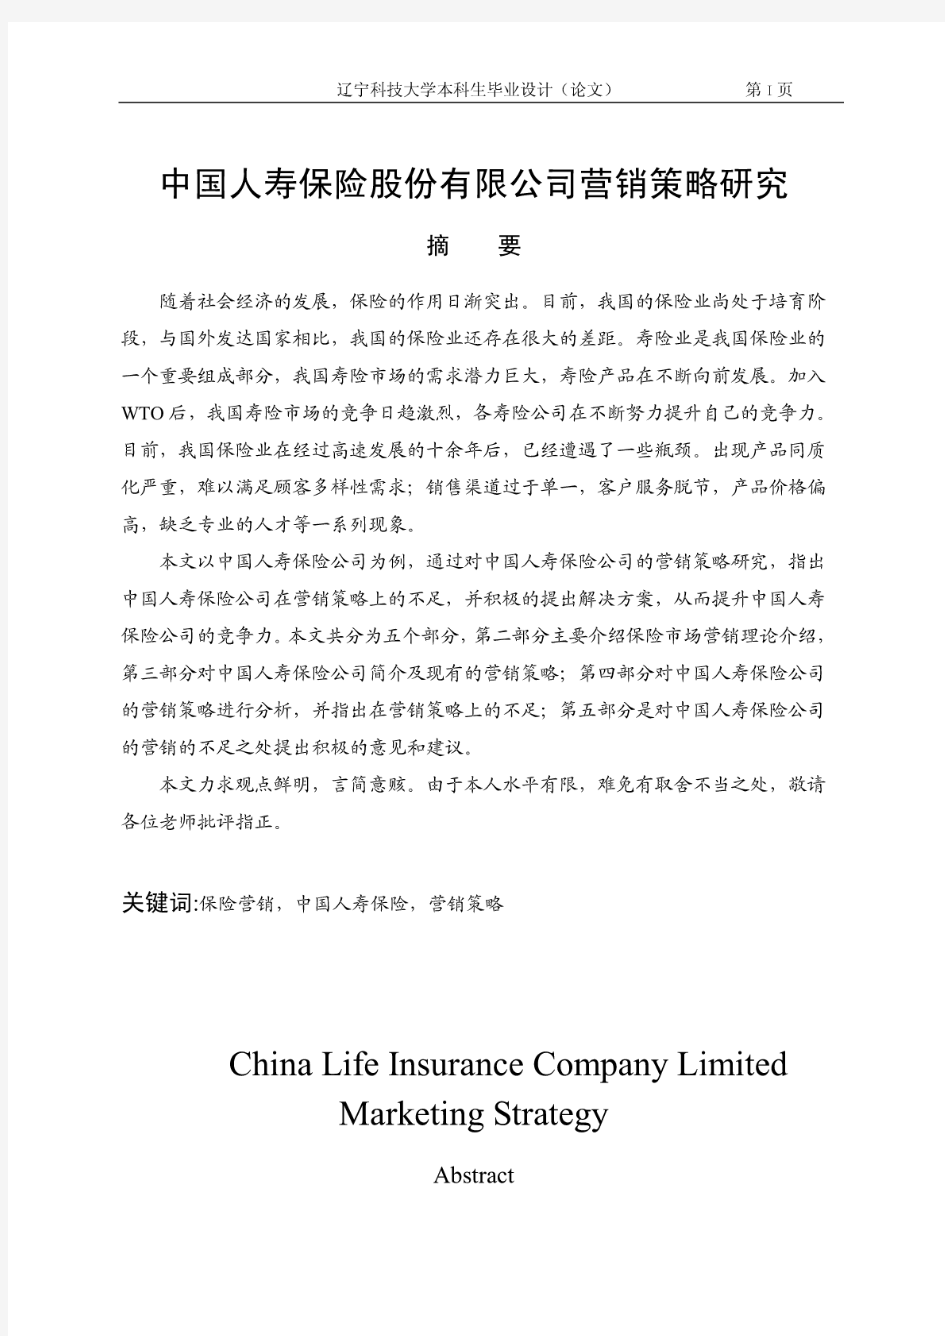 中国人寿保险公司营销策略研究